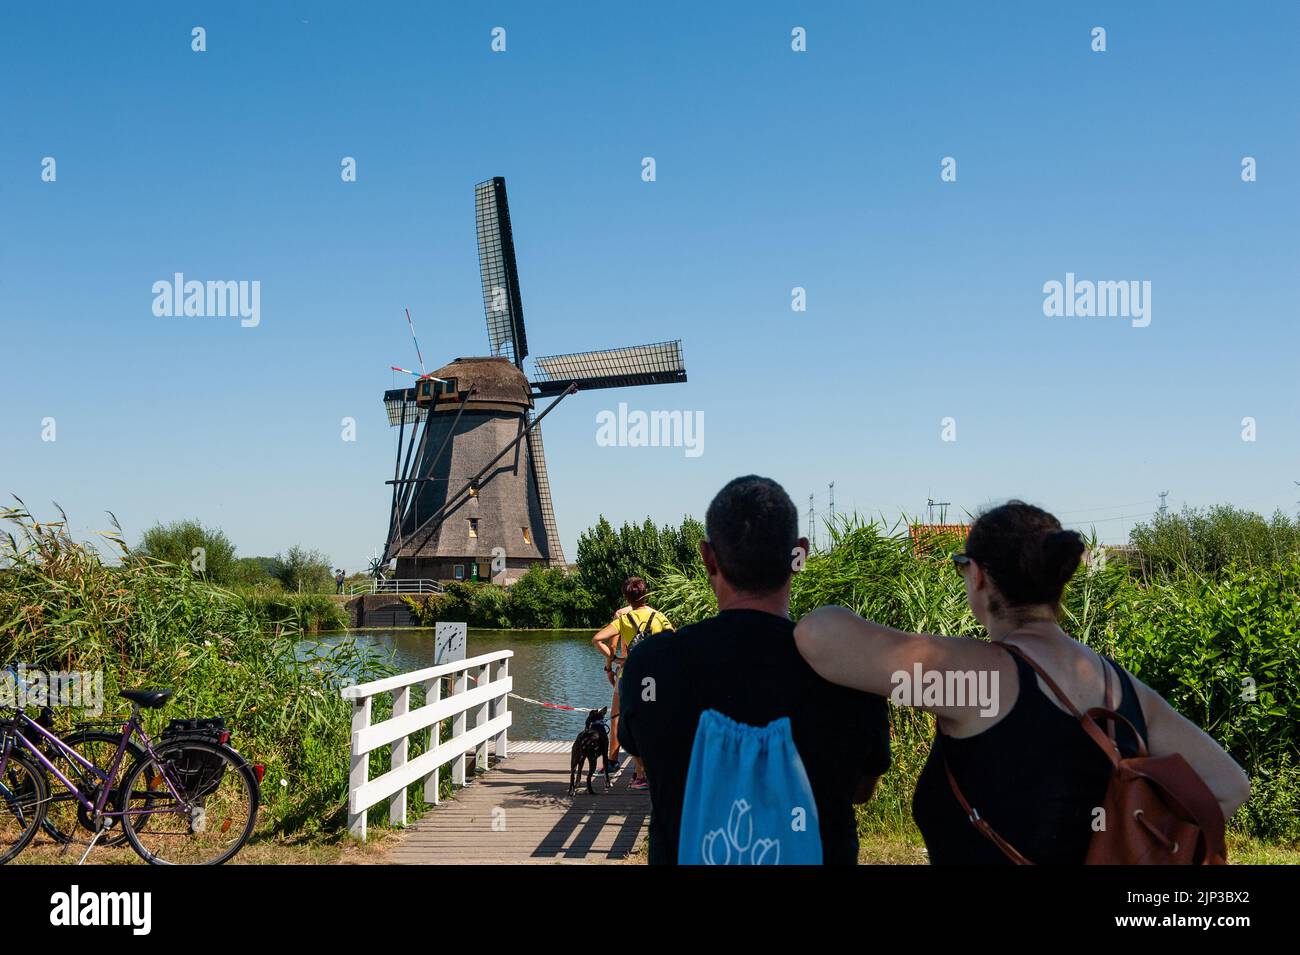 Kinderdijk, pays-Bas. 13th août 2022. Un couple est vu regardant l'un des moulins à vent de l'ombre sur une journée très chaude. Dans la belle région riche en eau près de Dordrecht, vous trouverez les moulins à vent de Kinderdijk. Construits vers 1740, ces 19 magnifiques moulins à vent font partie d'un plus grand système de gestion de l'eau pour éviter les inondations. Aujourd'hui, ils symbolisent la gestion de l'eau aux pays-Bas et, en 1997, ils ont été déclarés site du patrimoine mondial de l'UNESCO. Chaque année, des milliers de touristes du monde entier visitent ce lieu emblématique. Crédit : SOPA Images Limited/Alamy Live News Banque D'Images